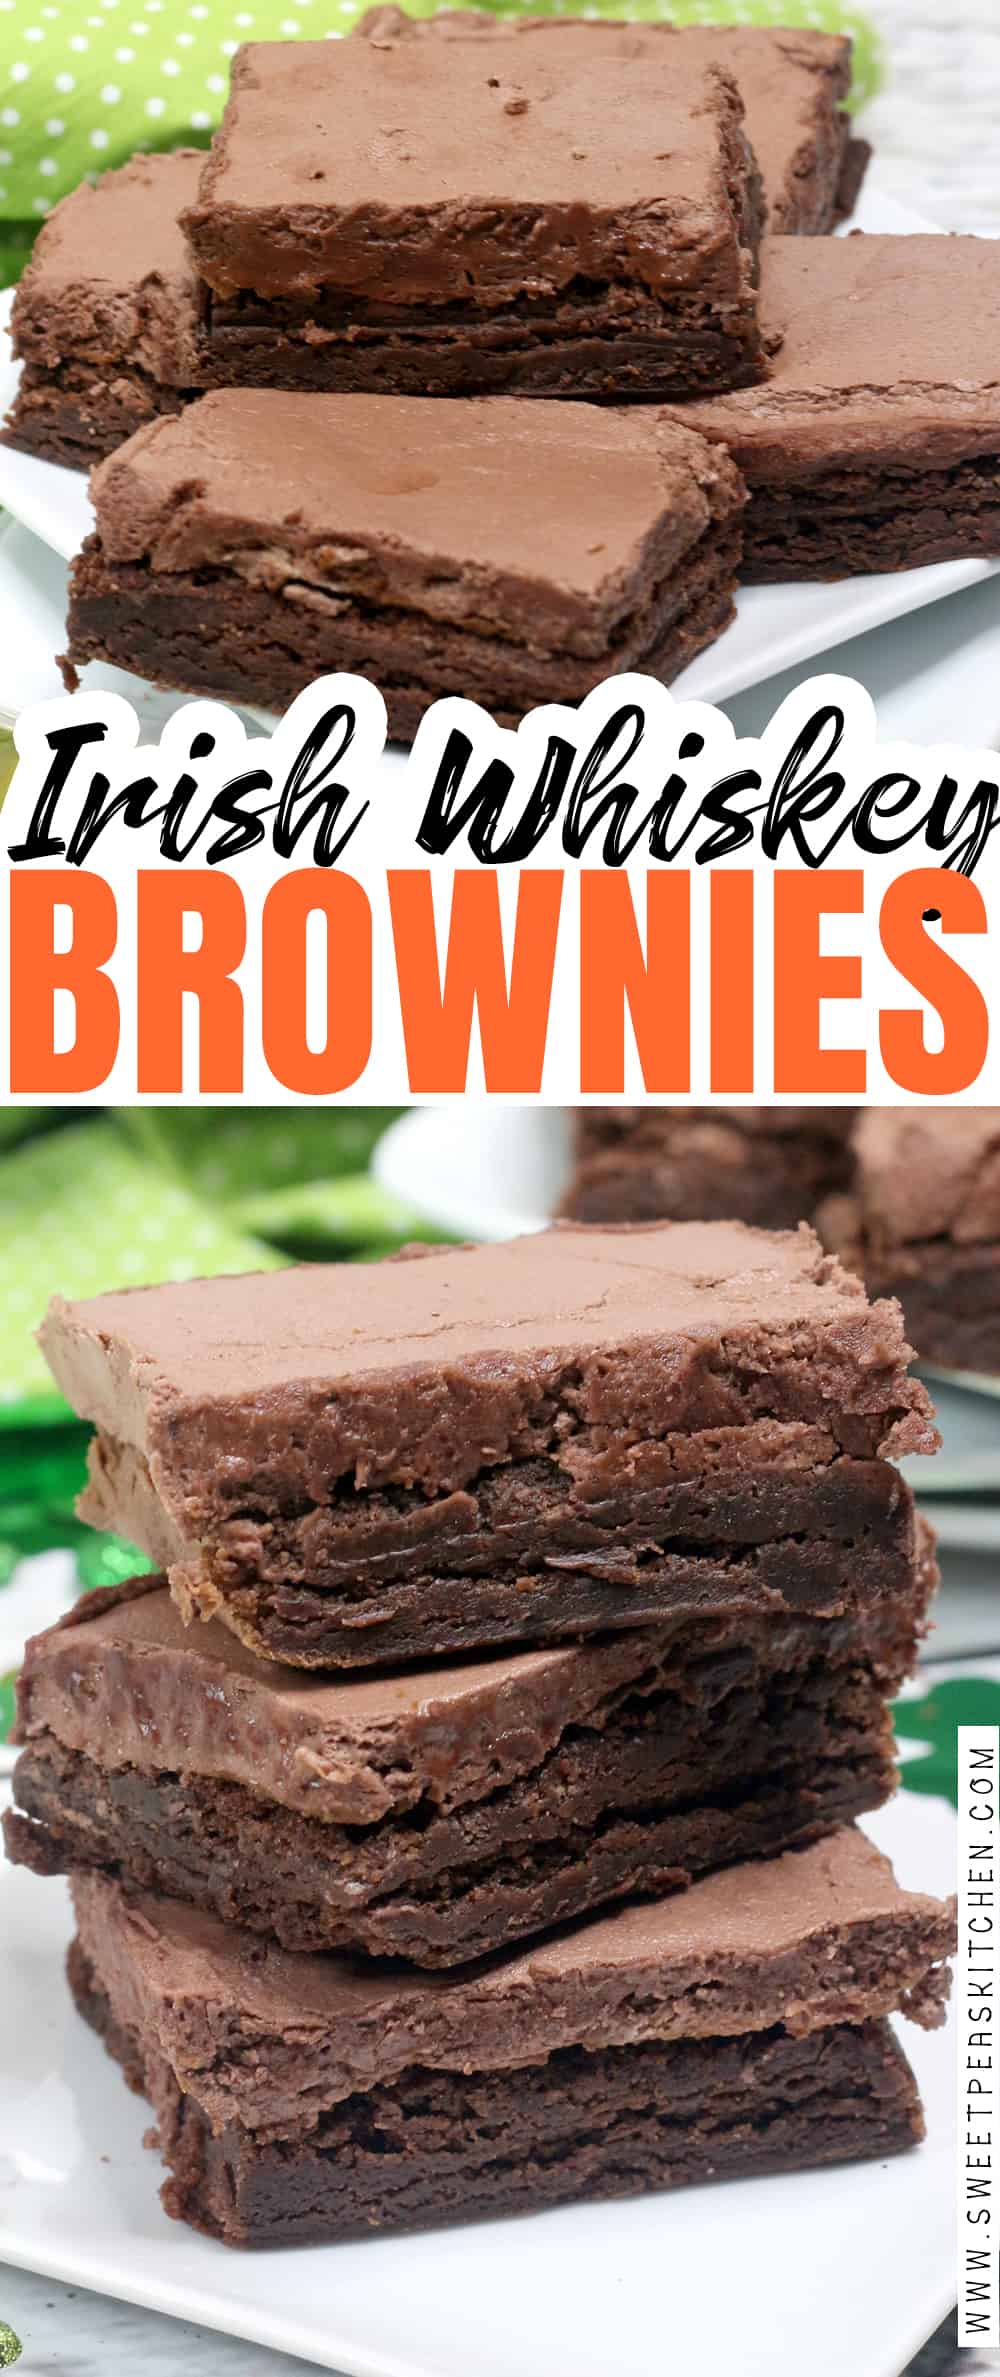 Irish whiskey brownies